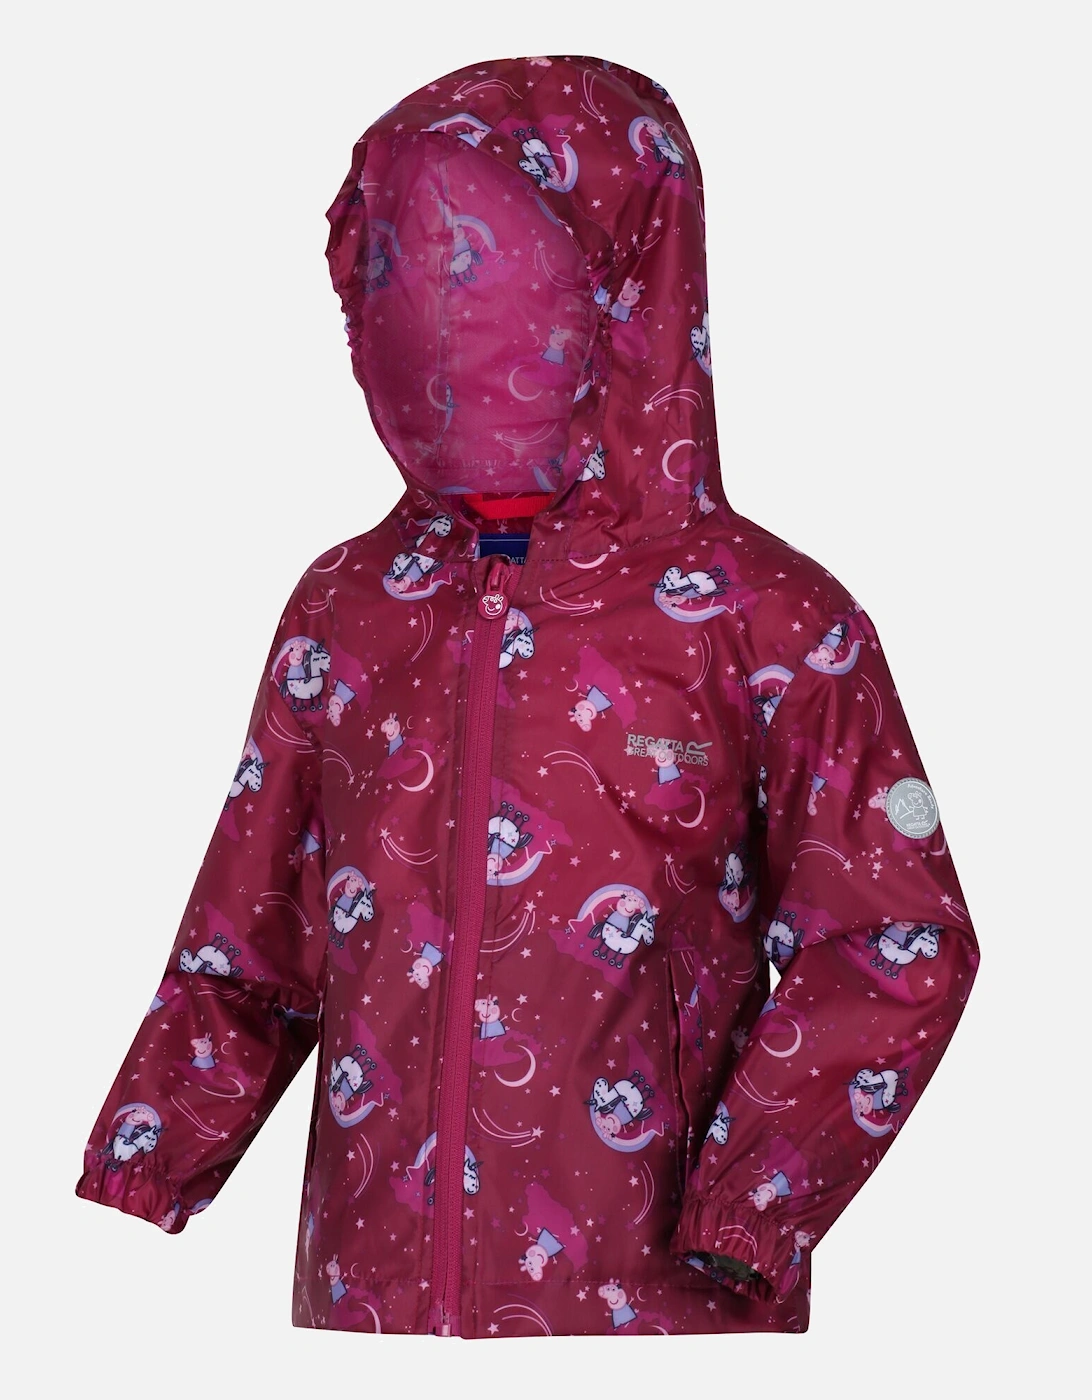 Childrens/Kids Peppa Pig Packaway Waterproof Jacket